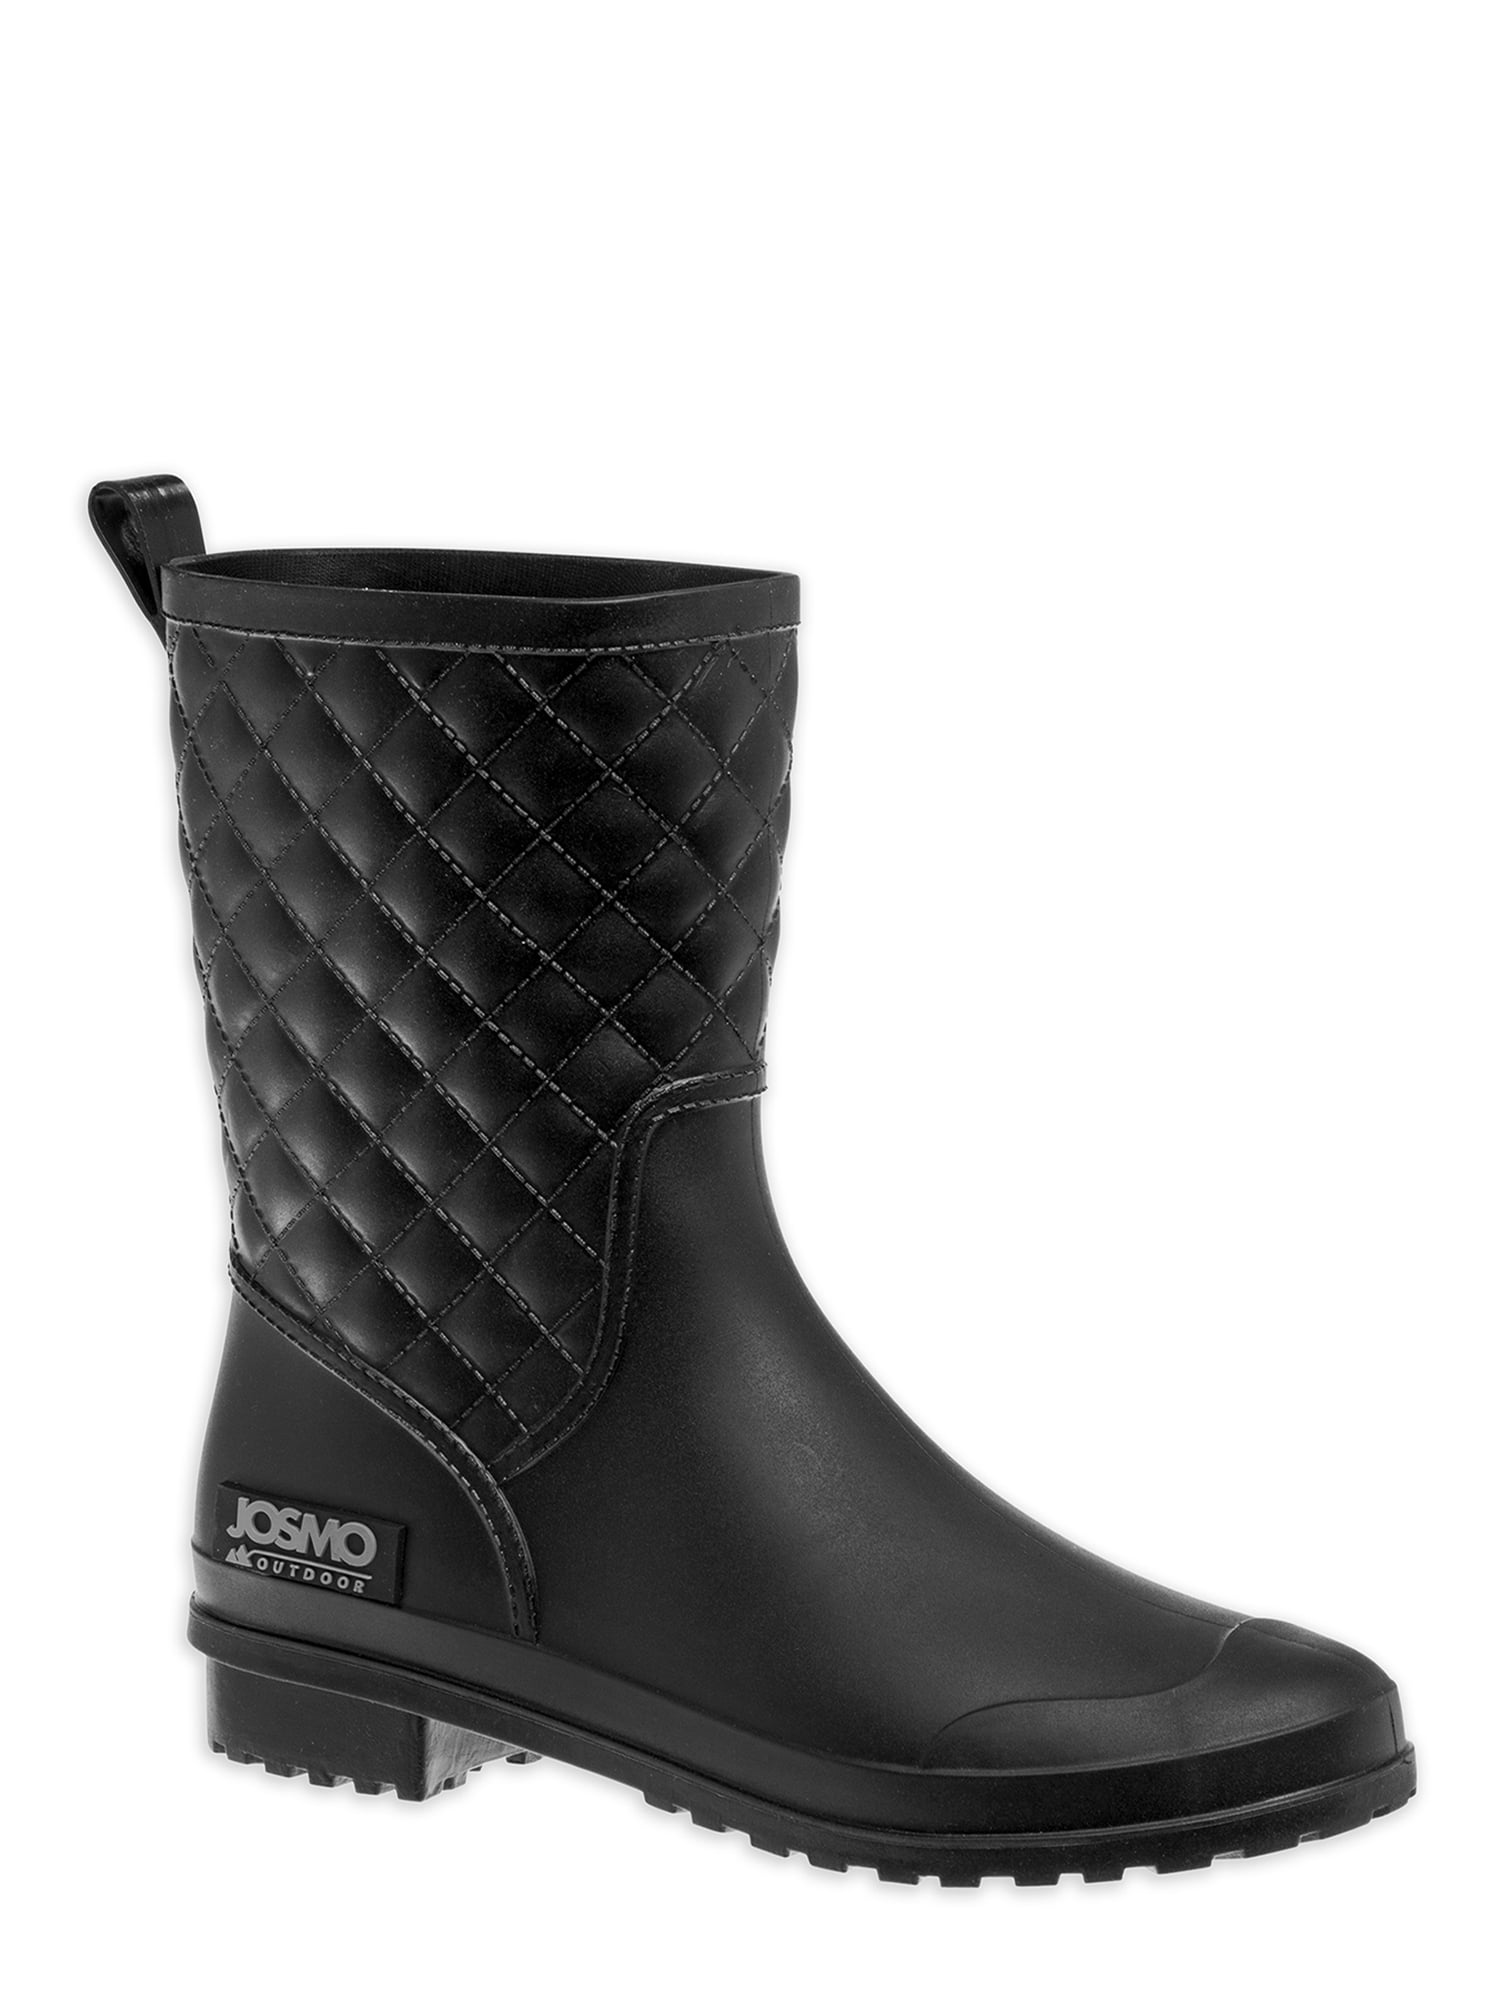 Josmo Outdoor Women's Waterproof Quilted Mid-Calf Rain Boot - Walmart.com